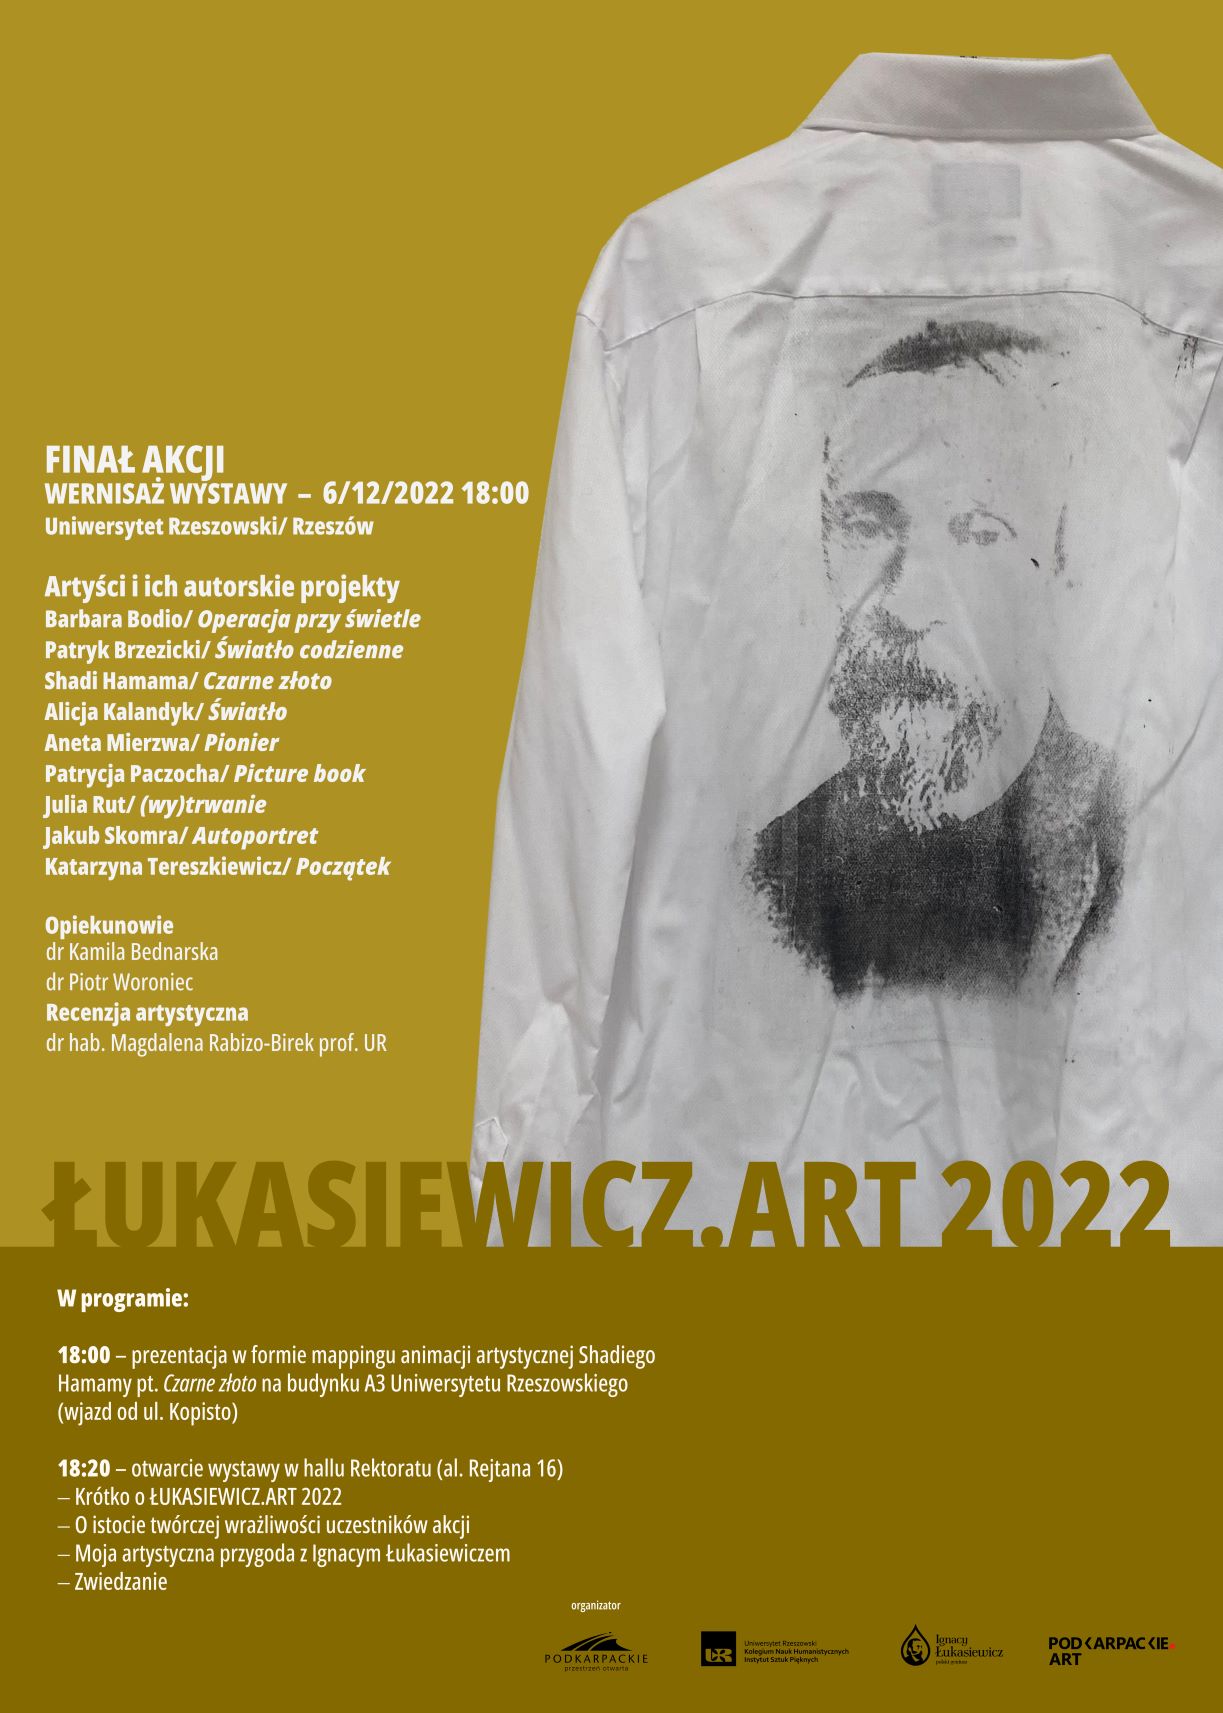 Afisz przedstawiający jedną z prac półpiersie Ignacego Łukasiewicza na białej koszuli